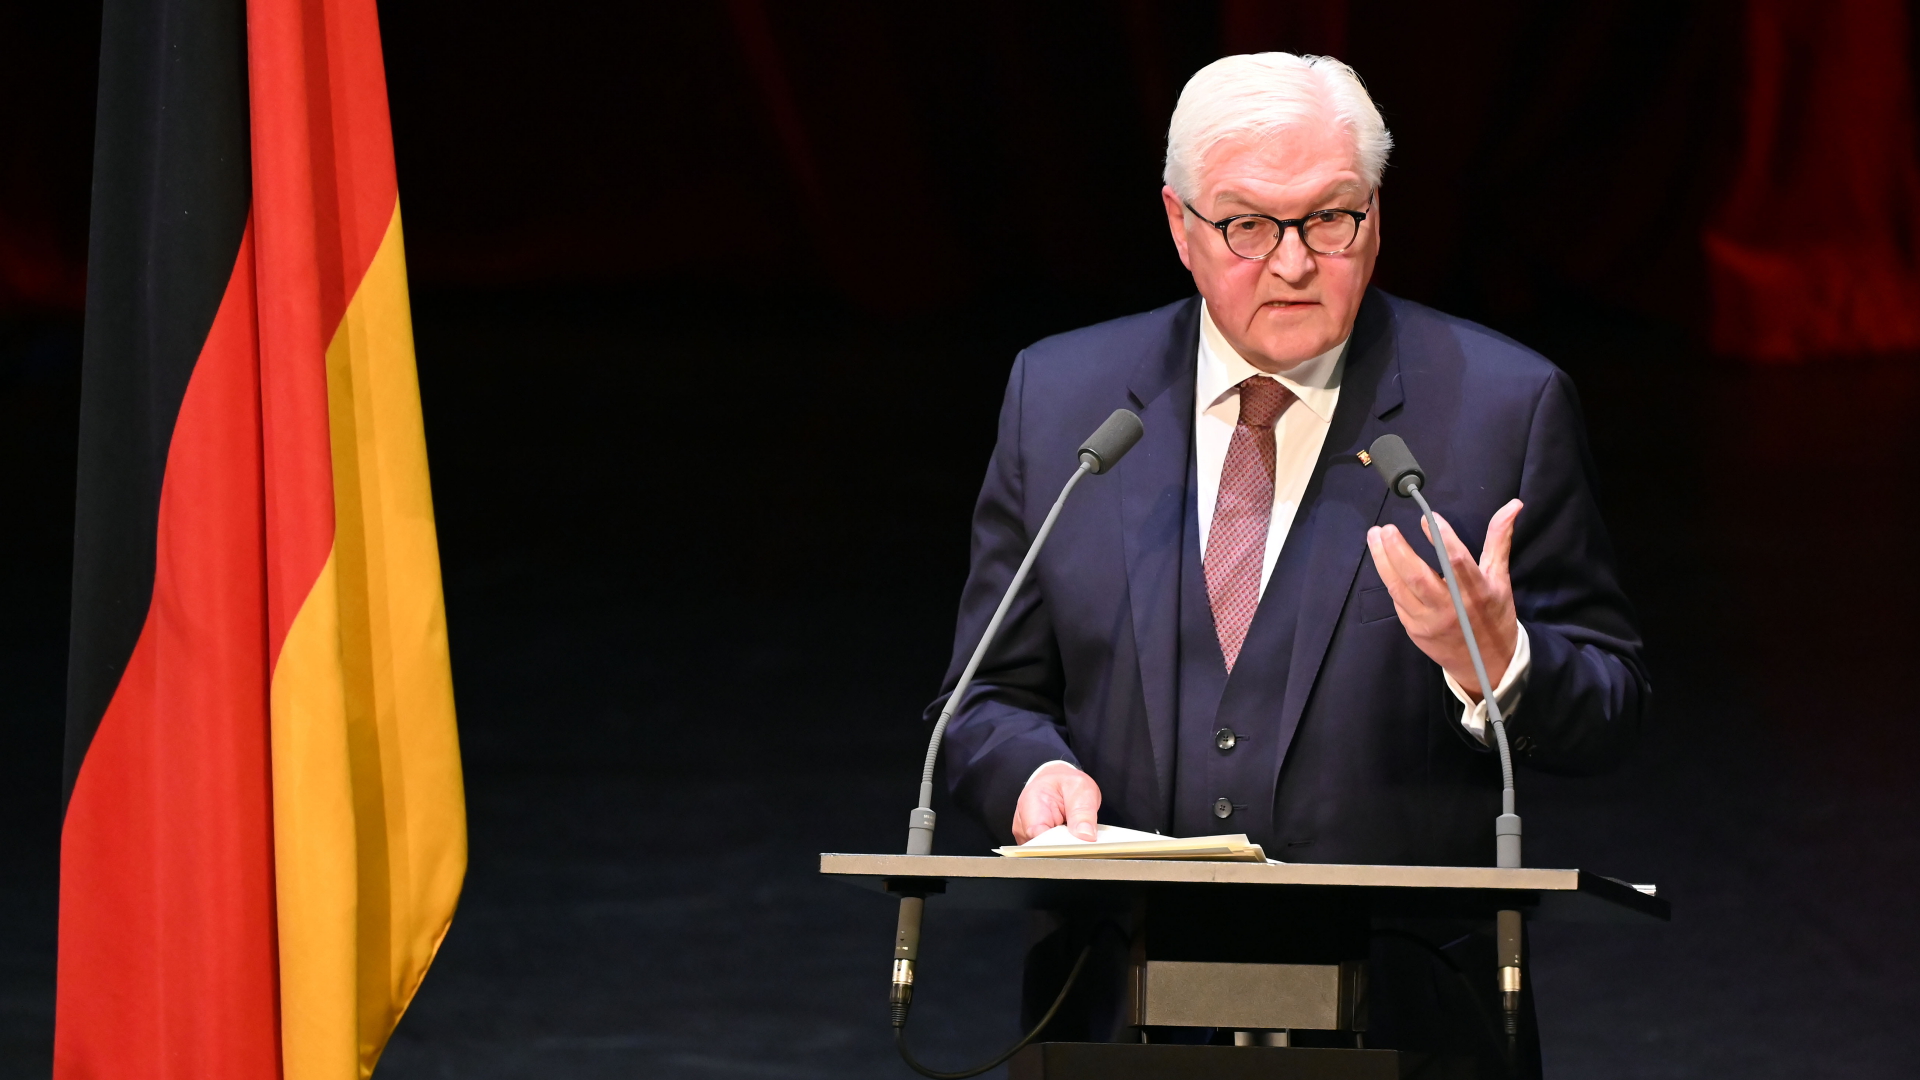 Bundespräsident Frank-Walter Steinmeier spricht im Badischen Staatstheater in Karlsruhe | dpa